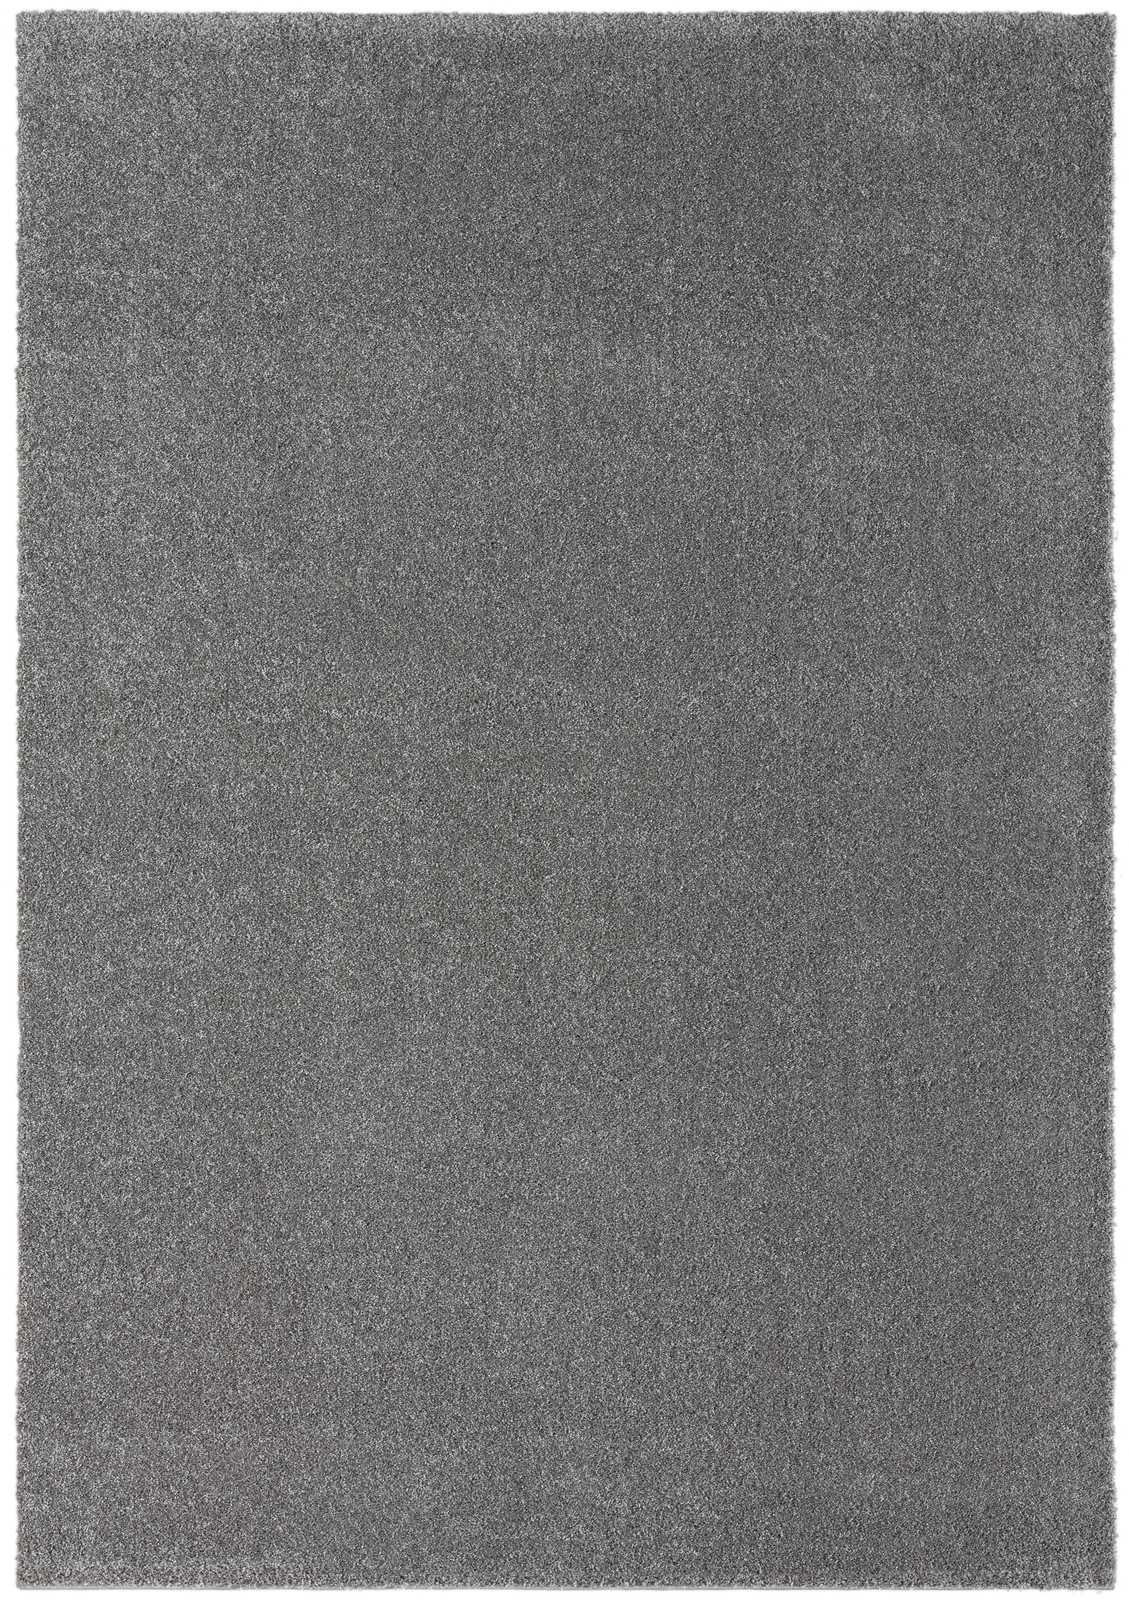             Tapis moelleux à poils courts gris - 290 x 200 cm
        